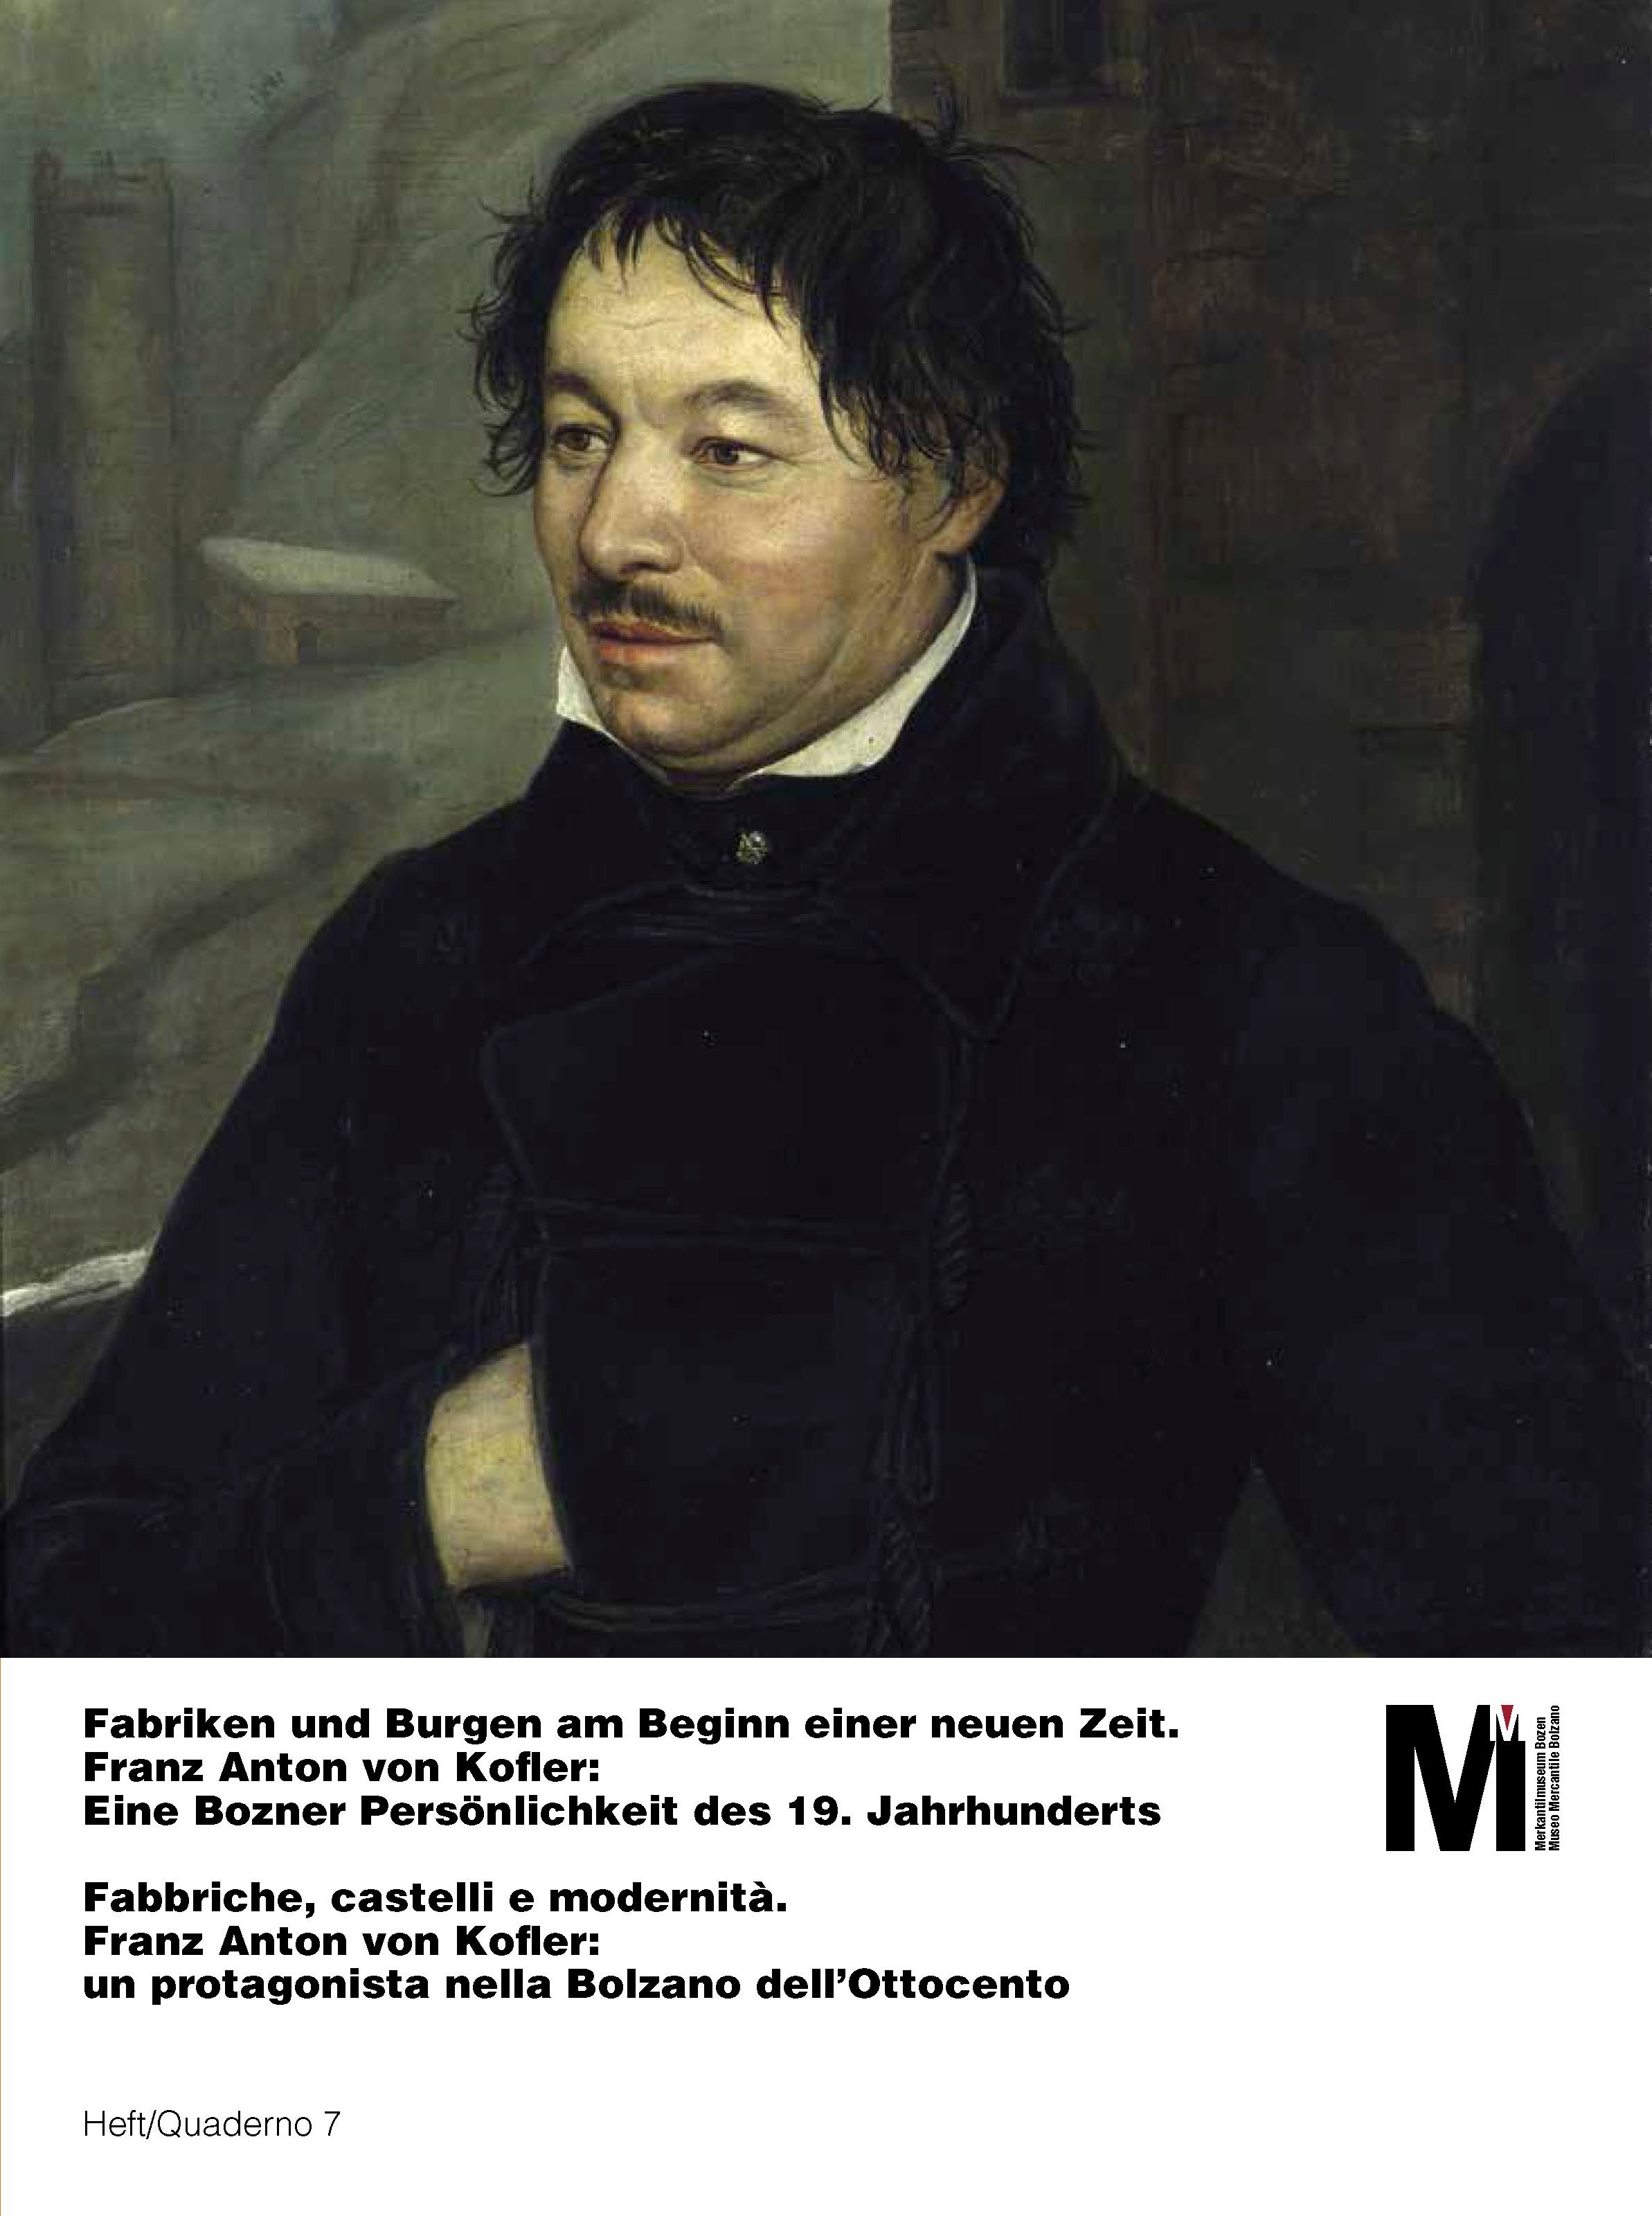 Fabbriche, castelli e modernità. Franz Anton von Kofler: un protagonista nella Bolzano dell'Ottocento